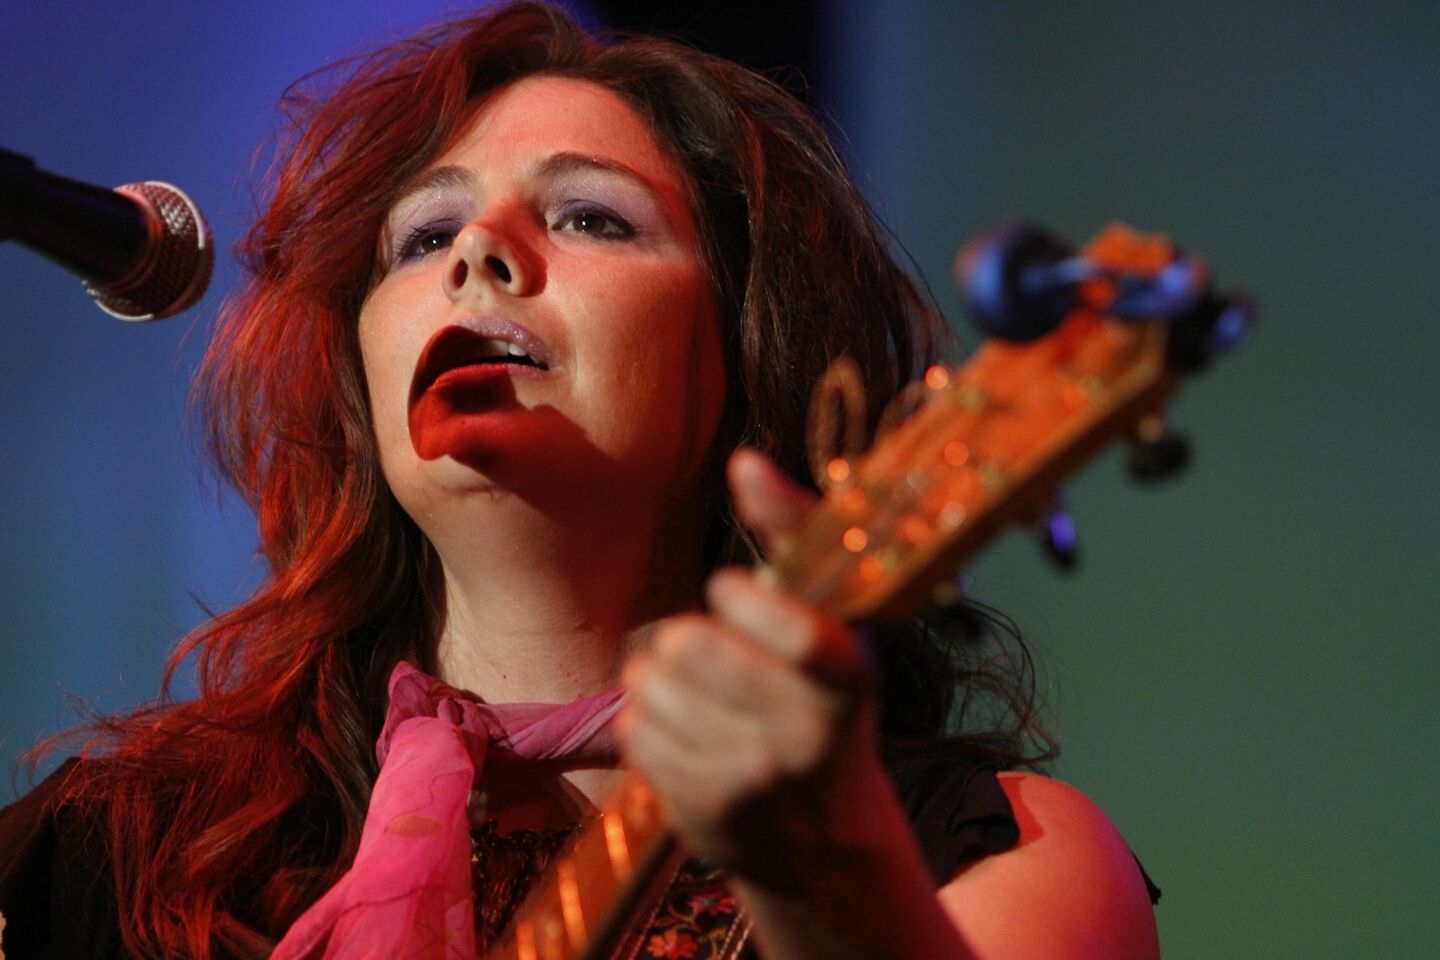 Sara Watkins sings during the 2013 San Diego Music Awards.